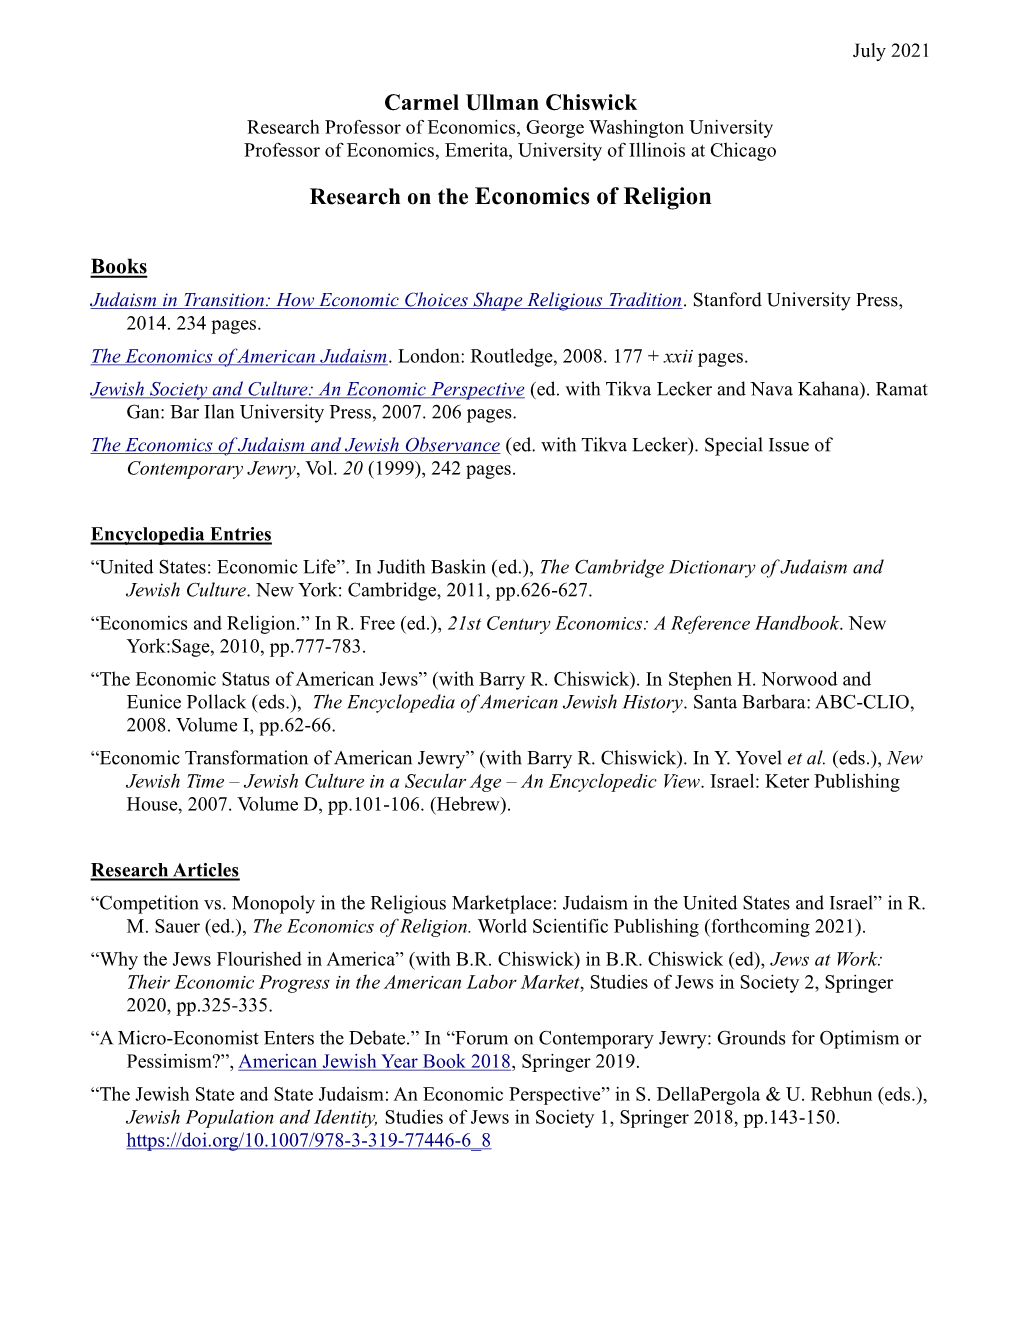 Economics of Religion (PDF)